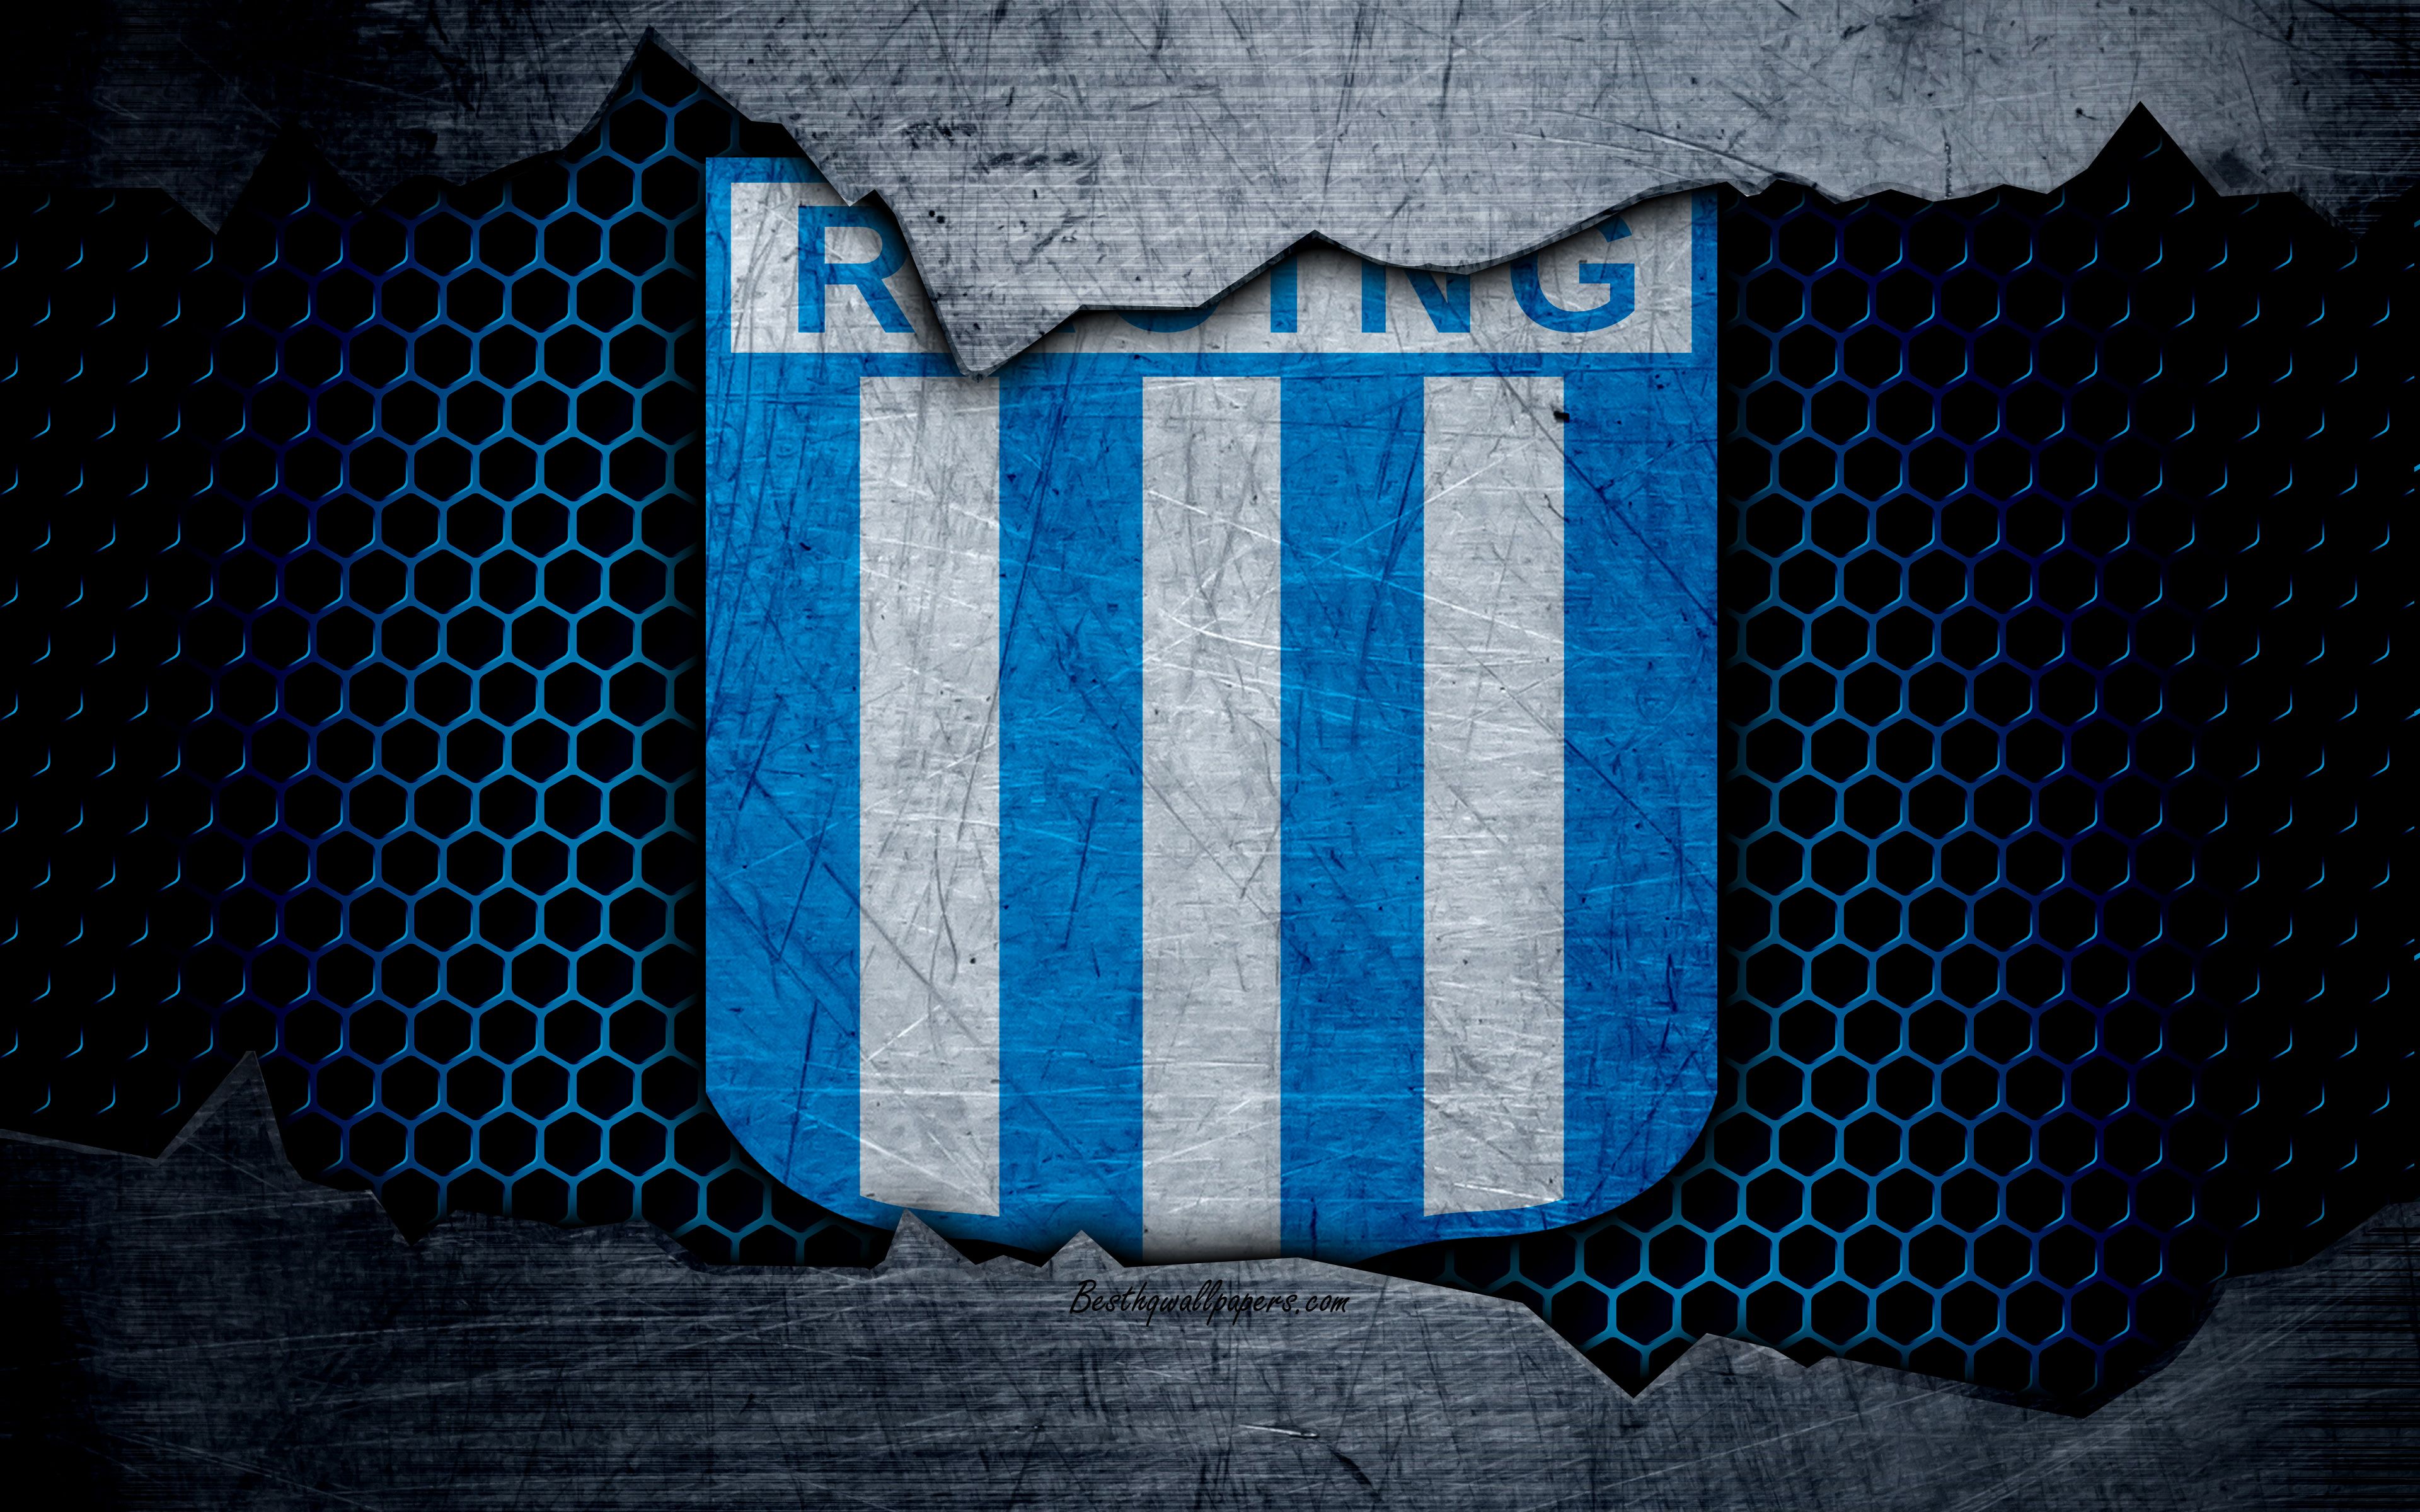 Download wallpaper Racing Club, 4k, Superliga, logo, grunge